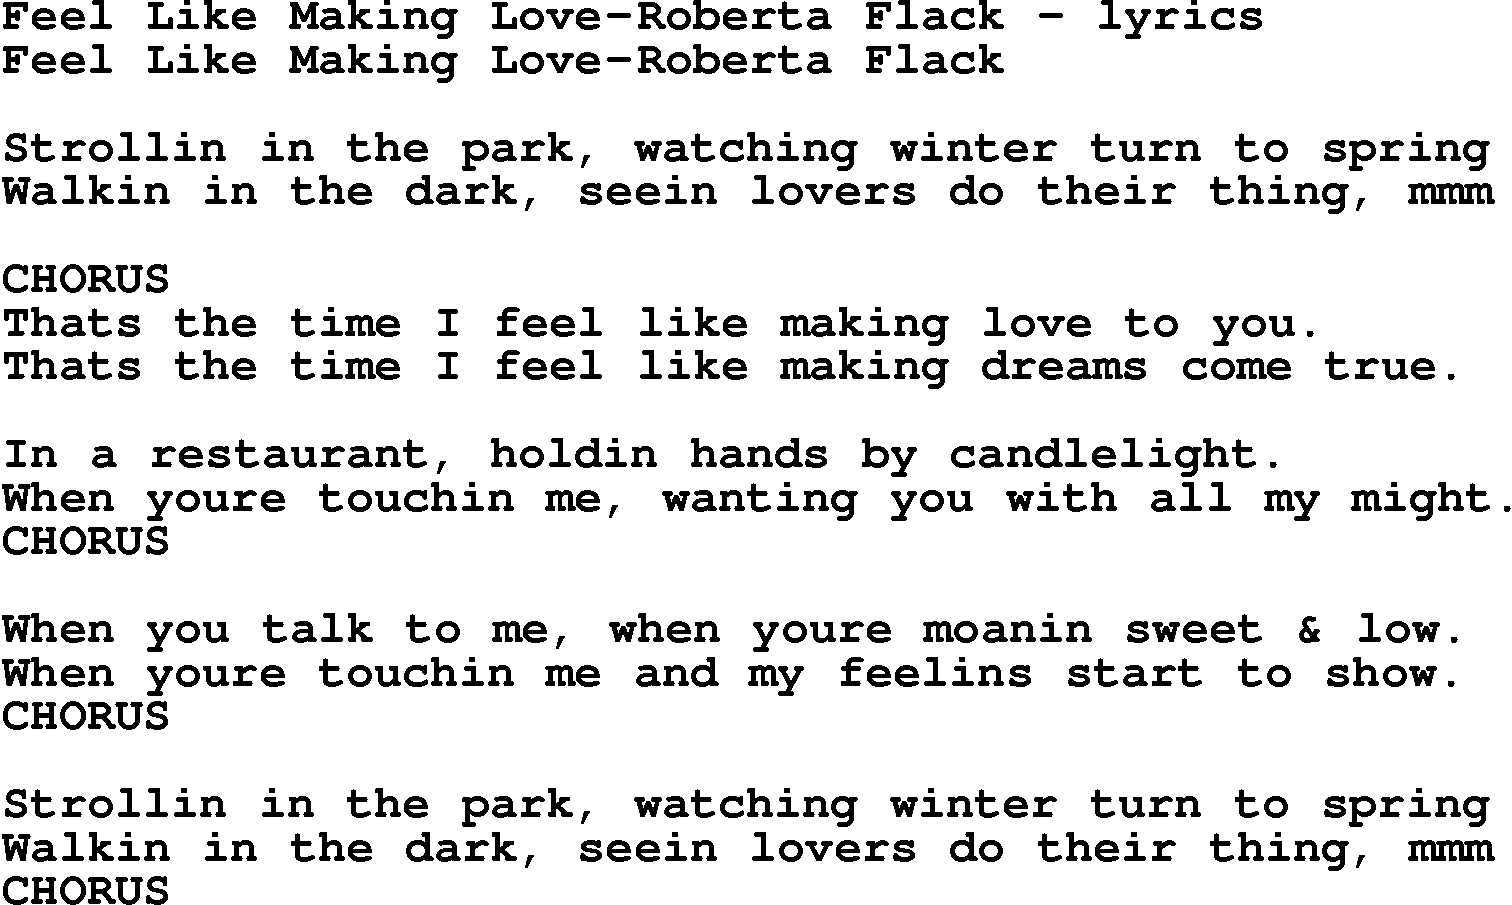 Love Song Lyrics for: Feel Like Making Love-Roberta Flack